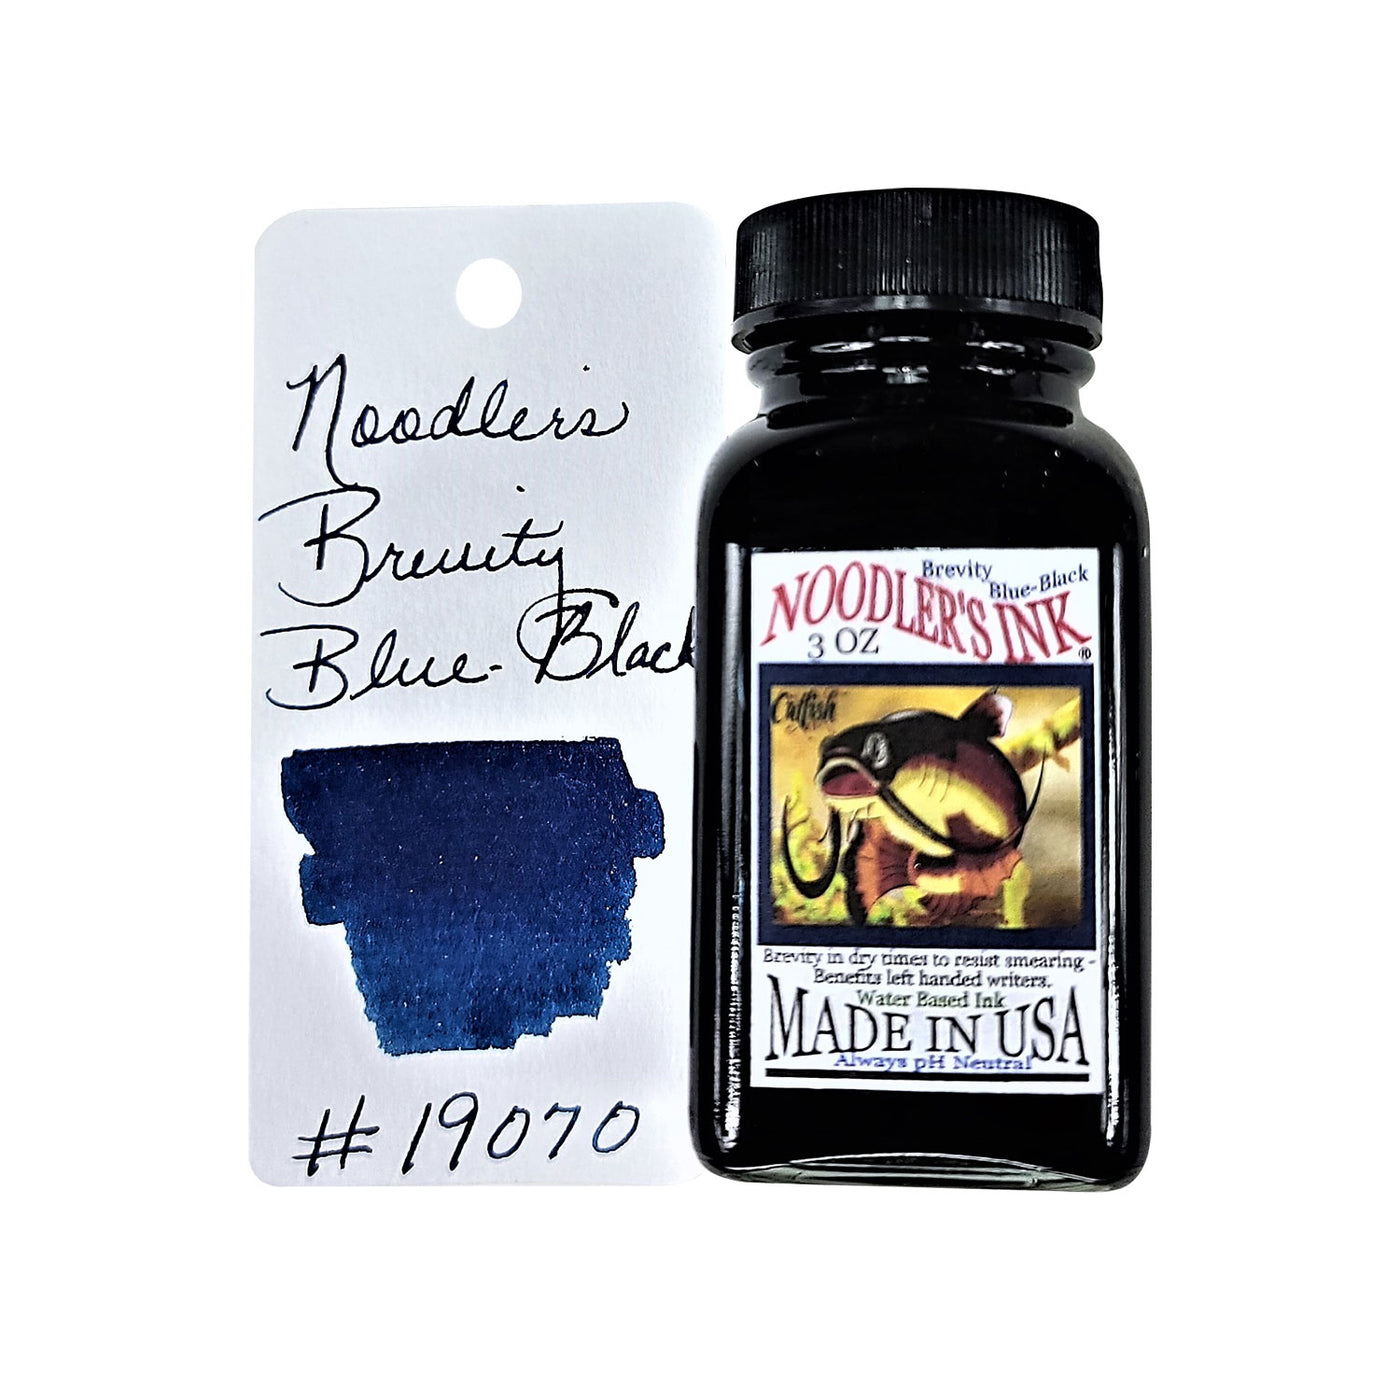 Noodler's 19070 Brevity Blue Black Ink Bottle - 88ml